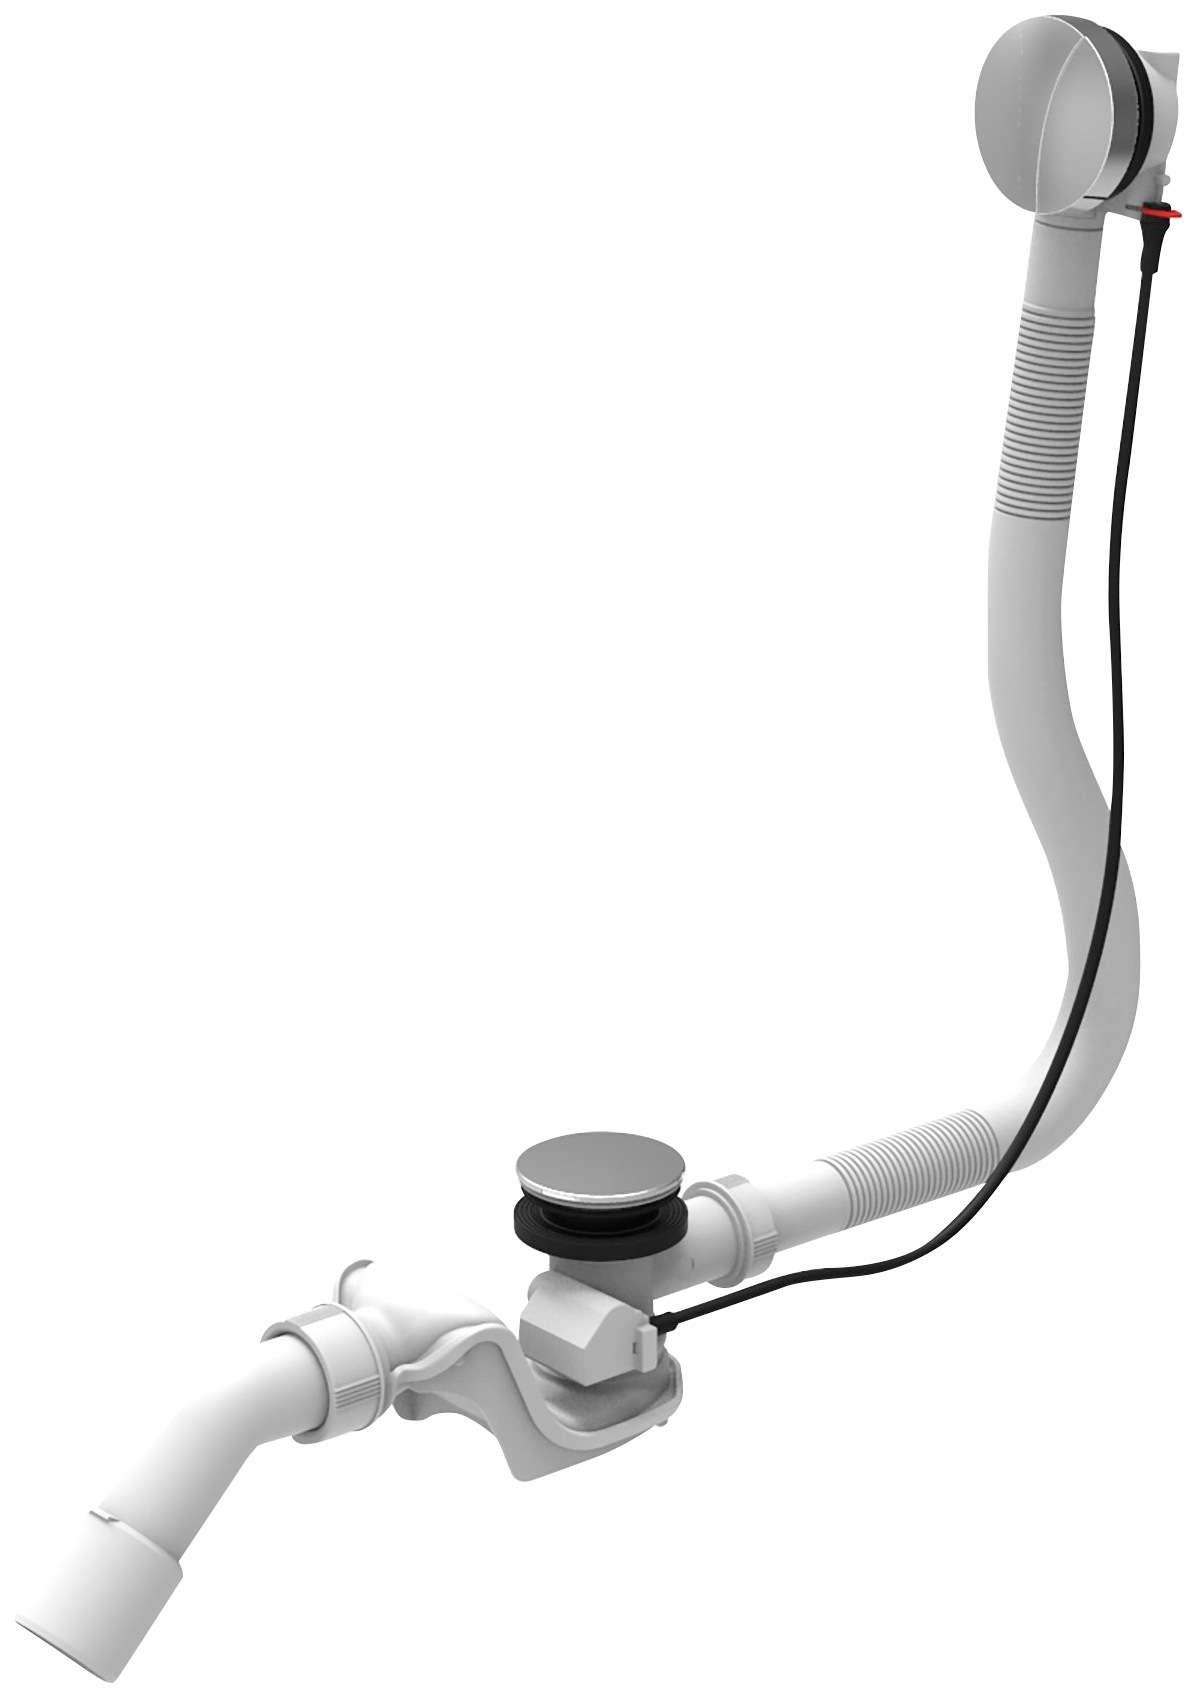 Ab-Überlaufgarnitur »Standard«, (1 tlg.), für Badewannen, chromfarben